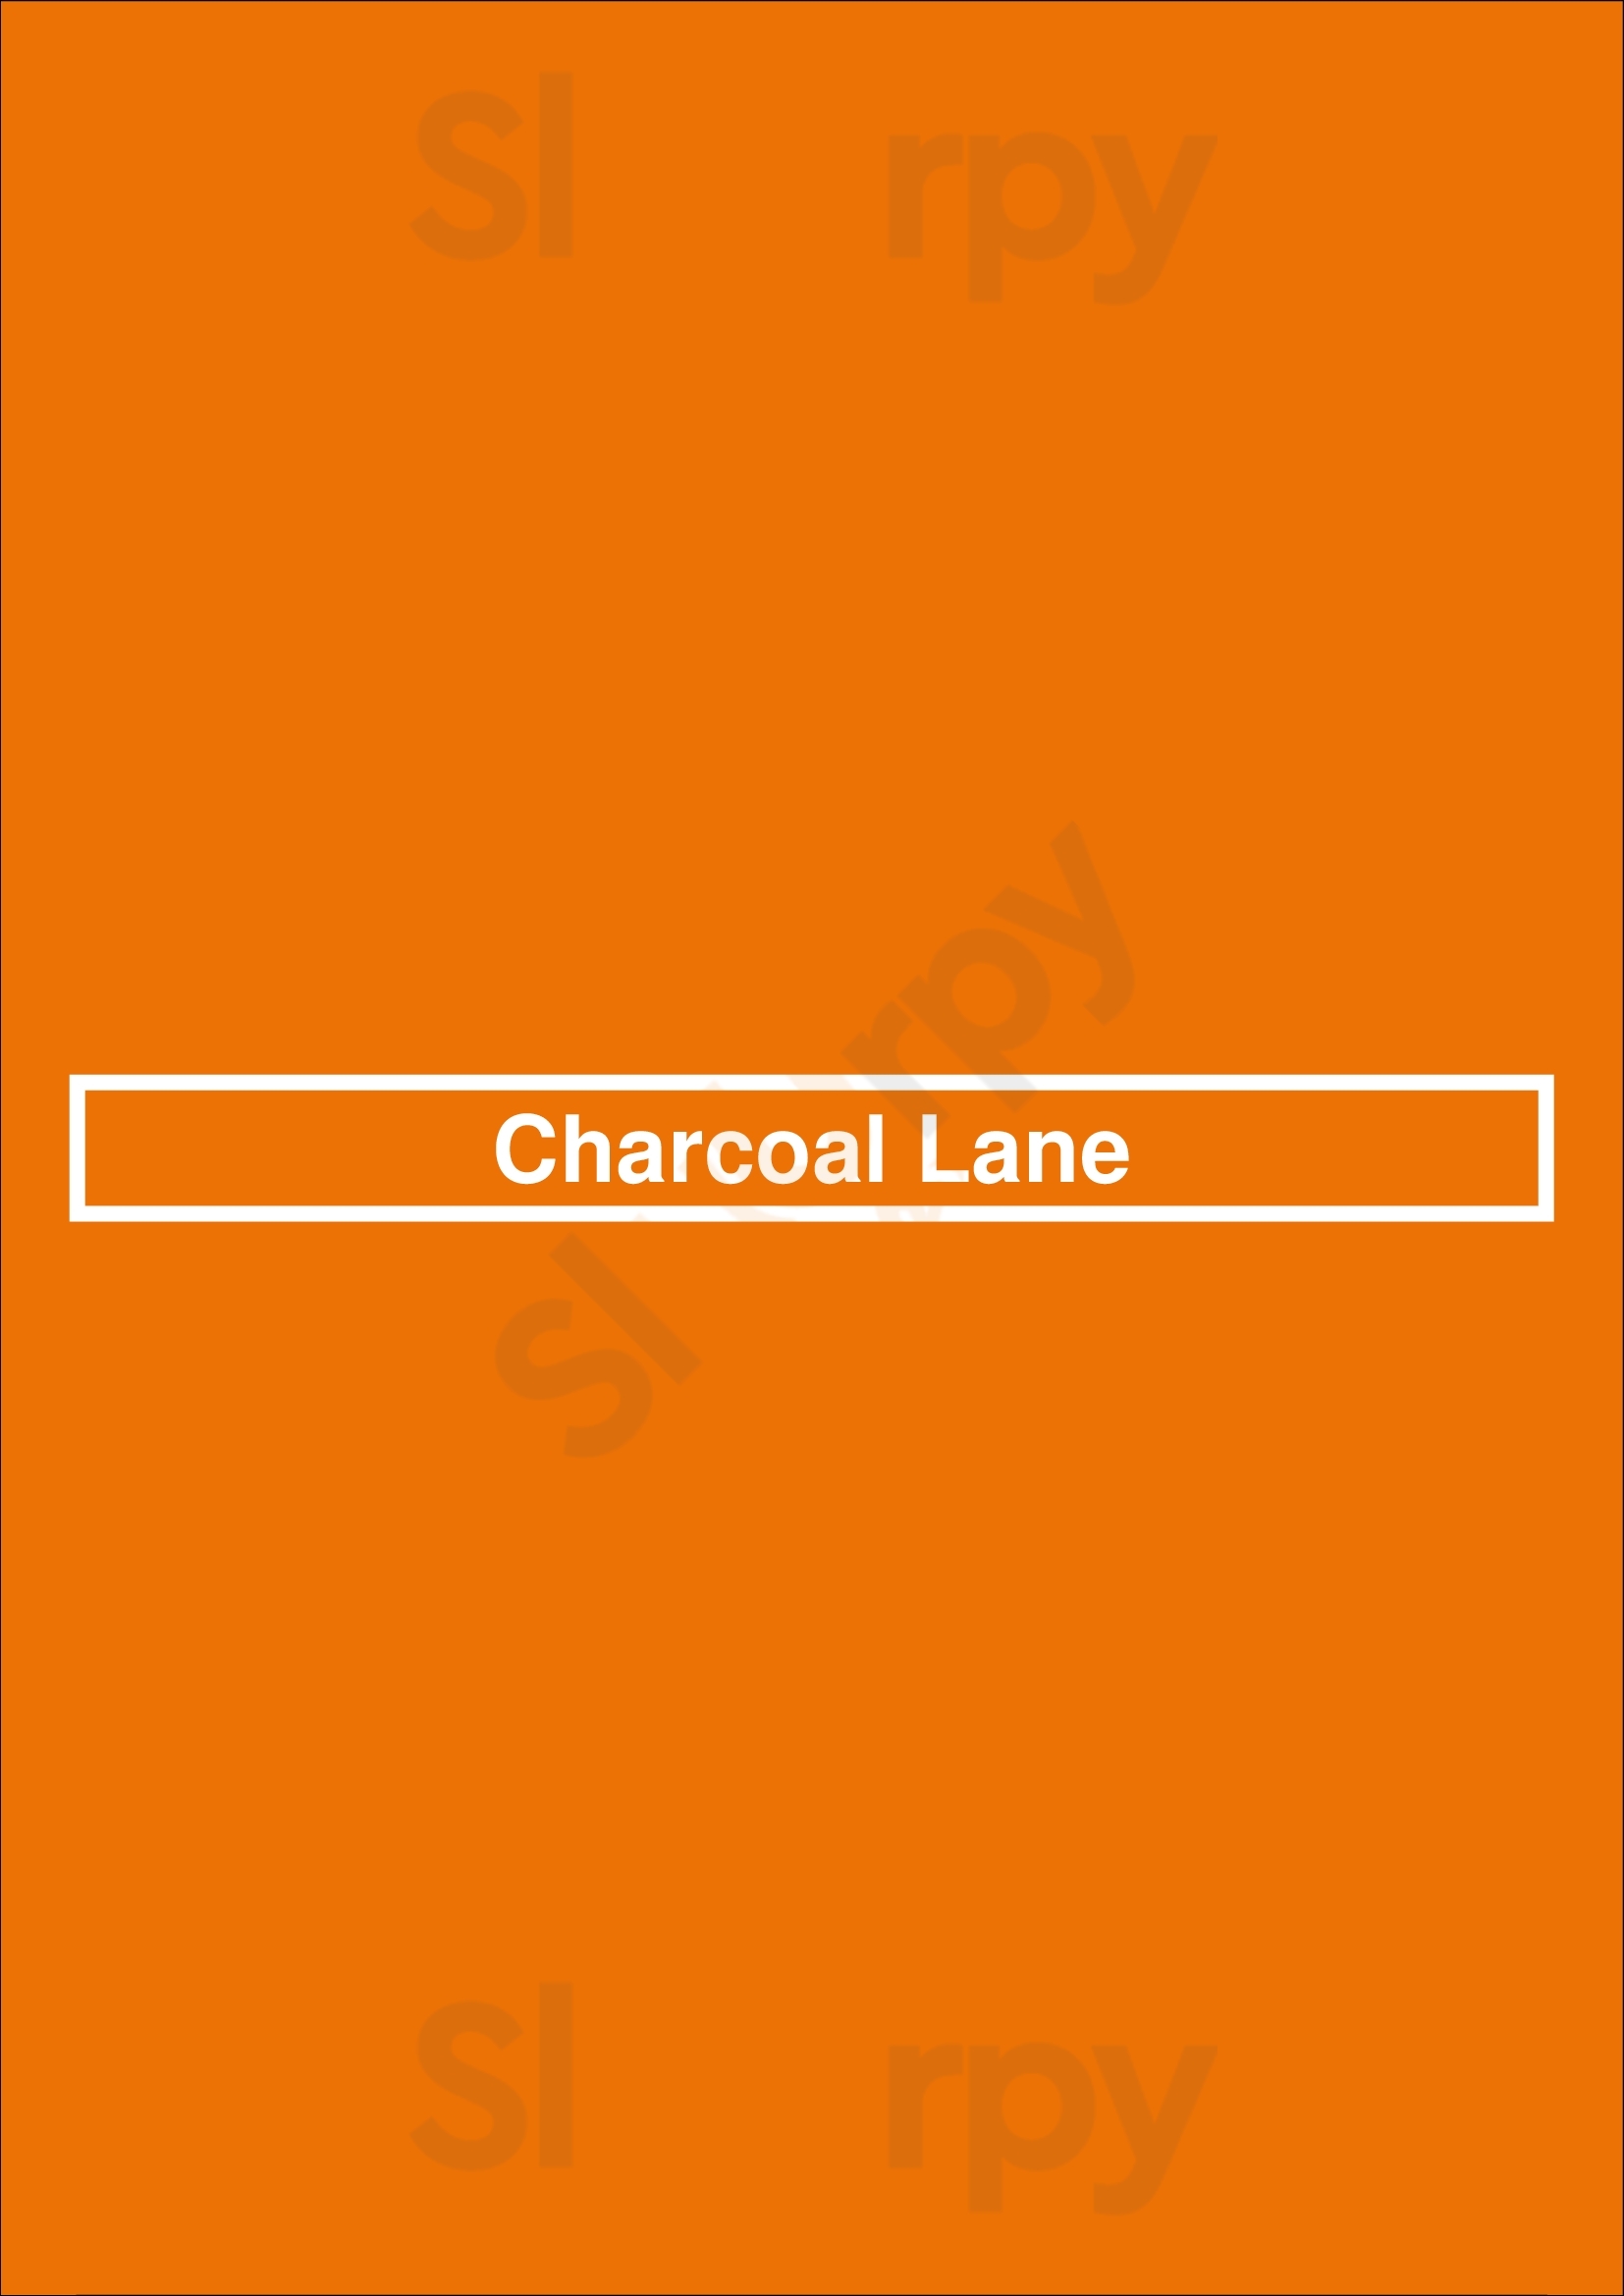 Charcoal Lane Fitzroy Menu - 1